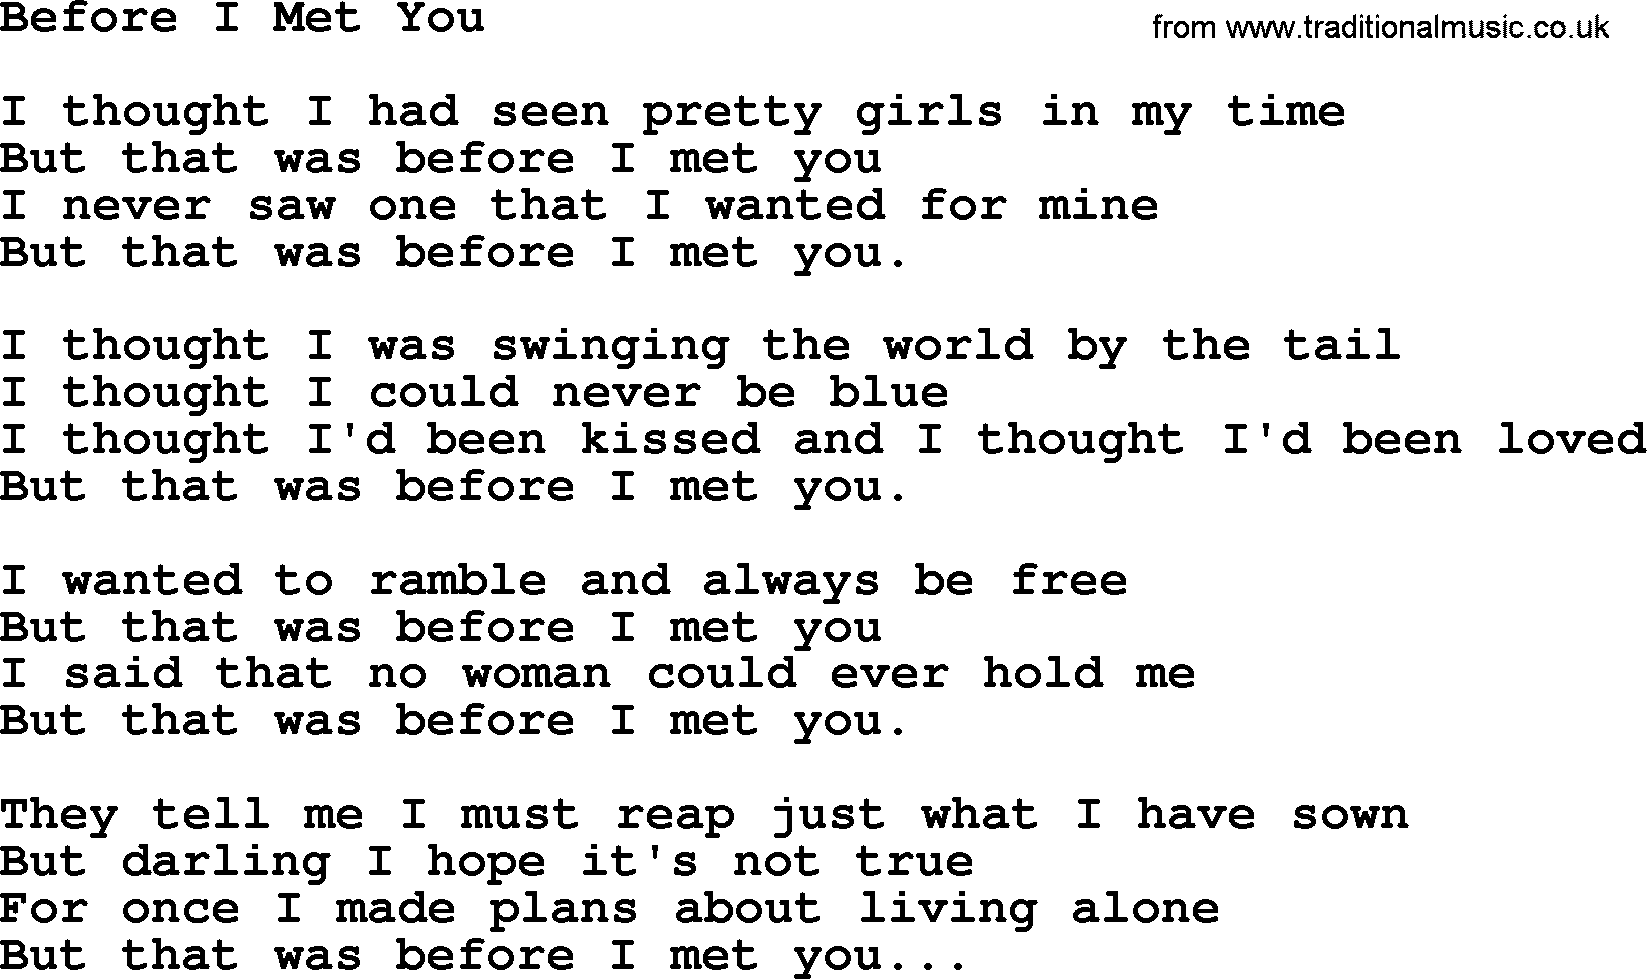 George Jones song: Before I Met You, lyrics